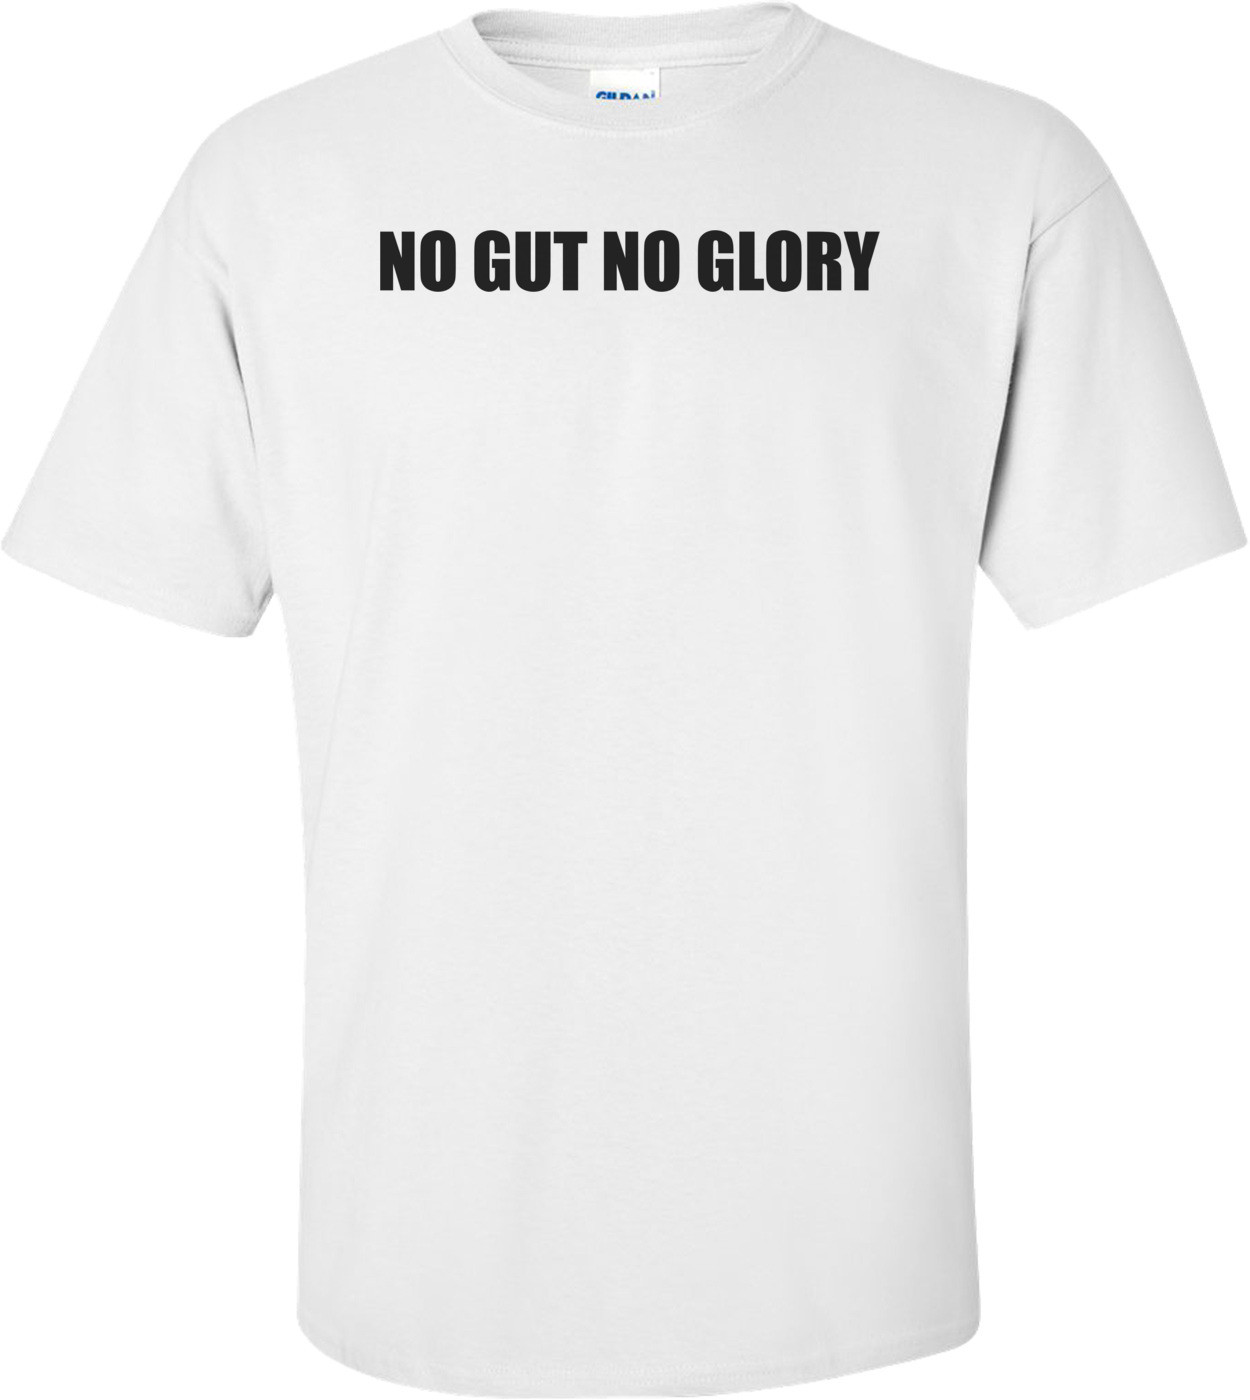 NO GUT NO GLORY Shirt